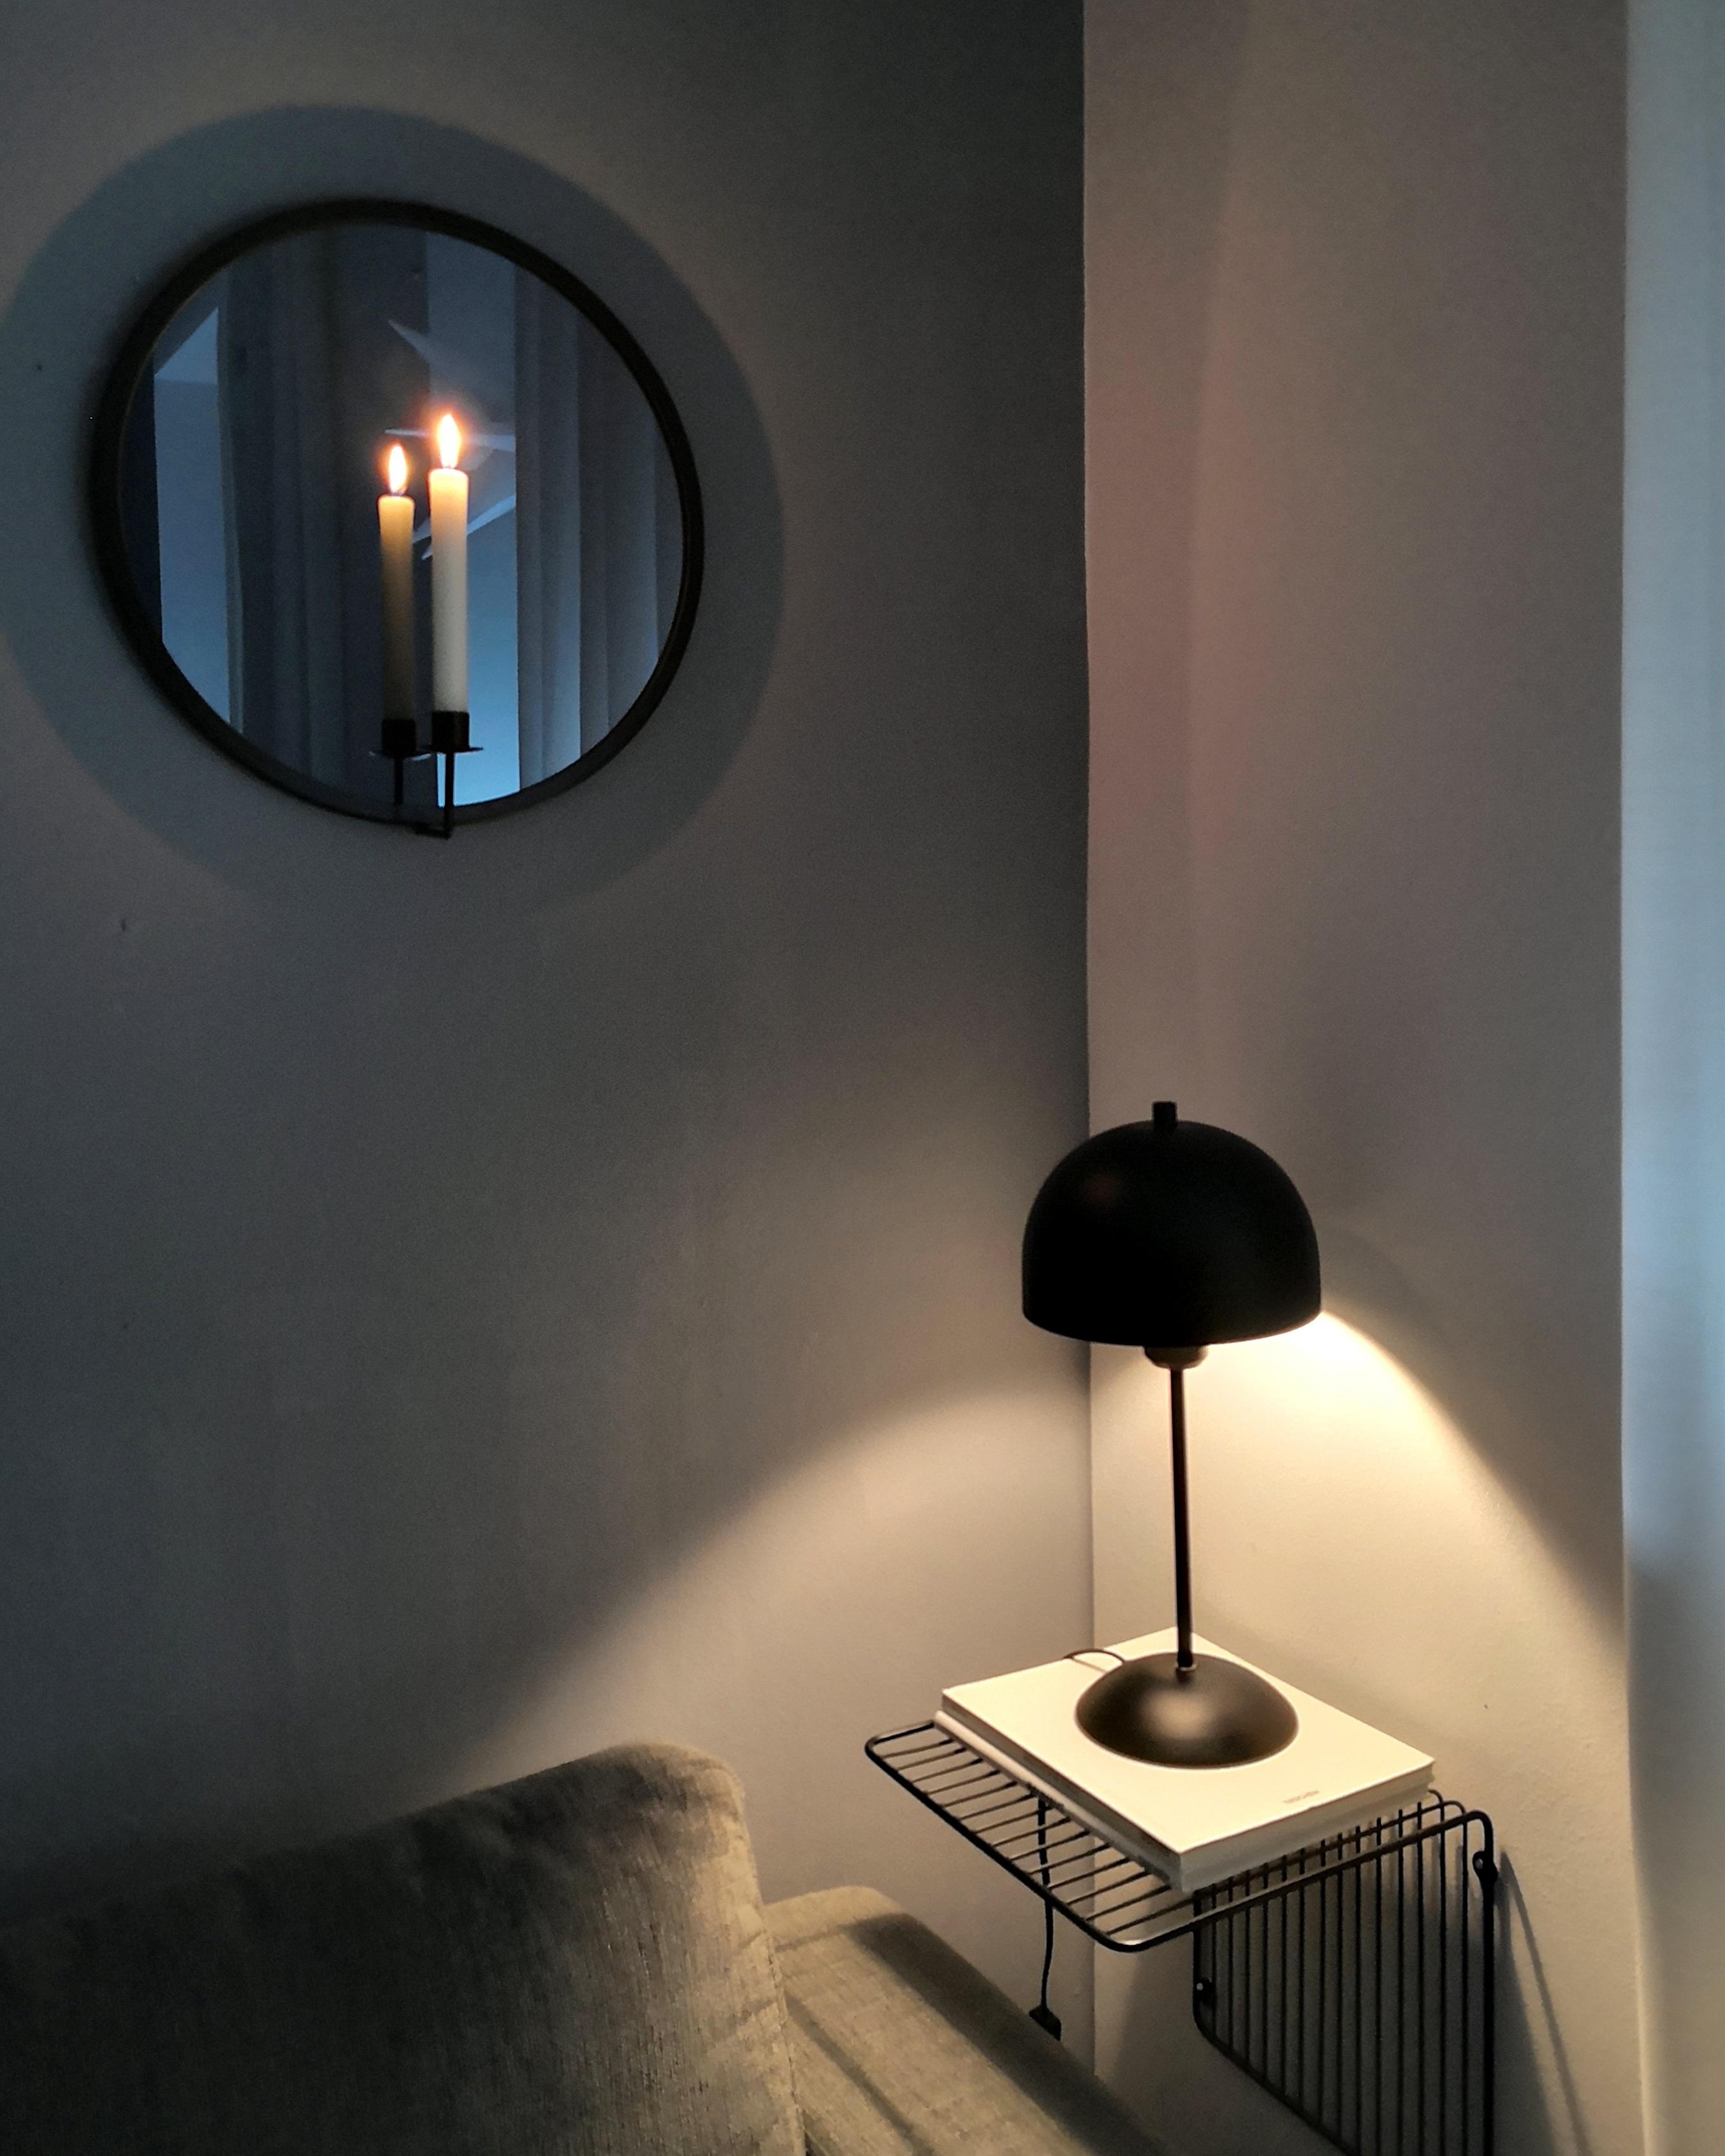 #newin #kerzenhalter #spiegel #wohnzimmer #livingroom #sofaEcke #kerzenlicht #hygge #cozy